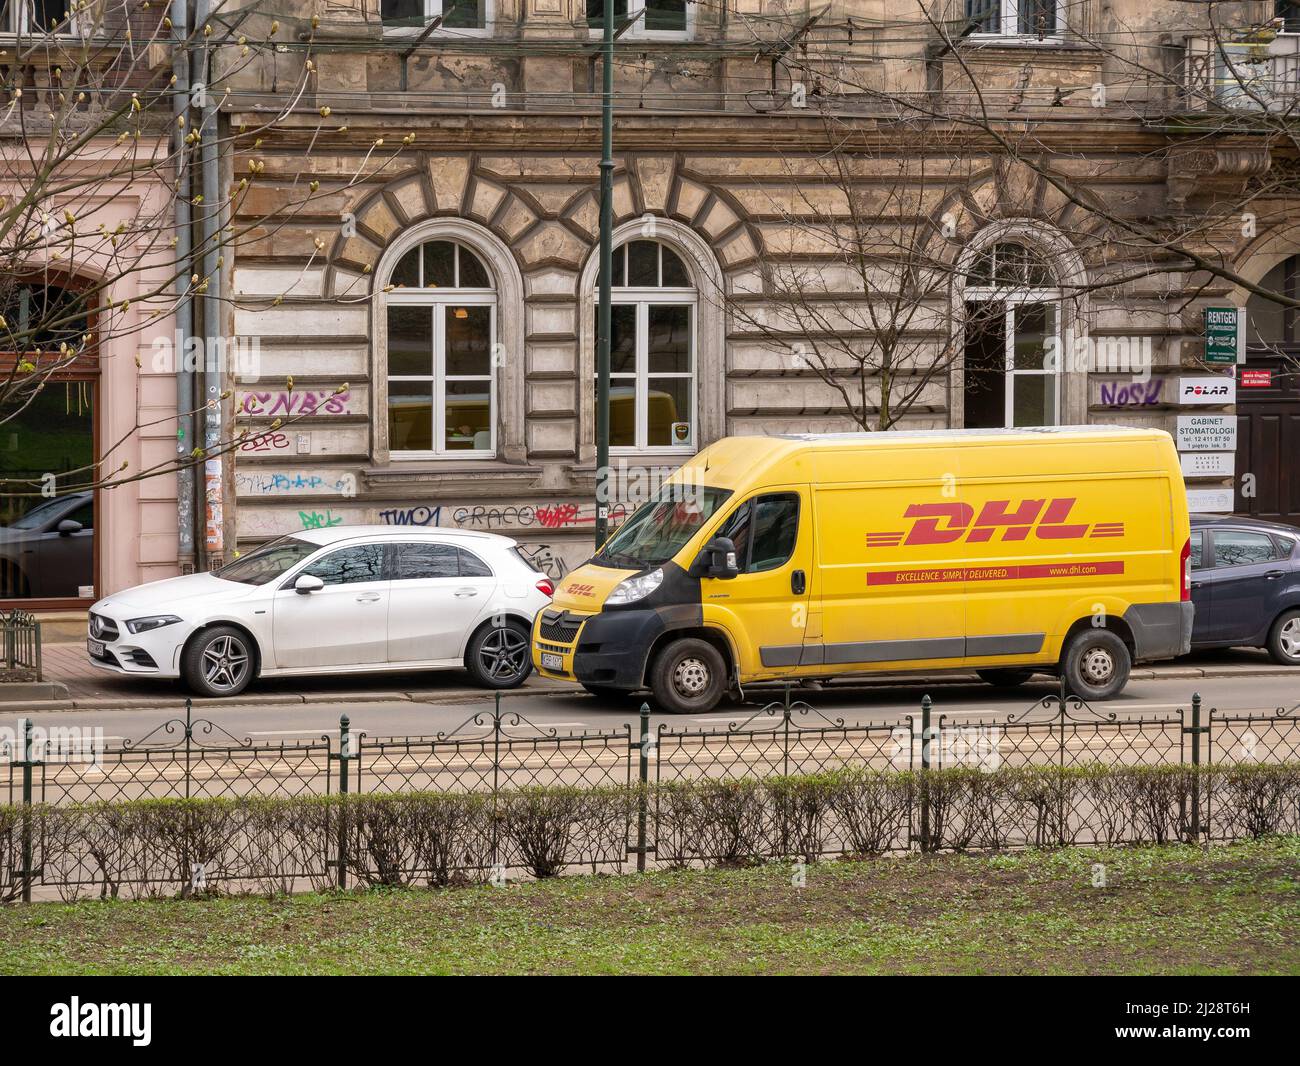 Service de livraison de colis DHL camion, camionnette, véhicule stationné dans la rue à proximité d'un bâtiment, compagnie de messagerie logistique allemande DHL, zone urbaine, Cracovie, Polan Banque D'Images